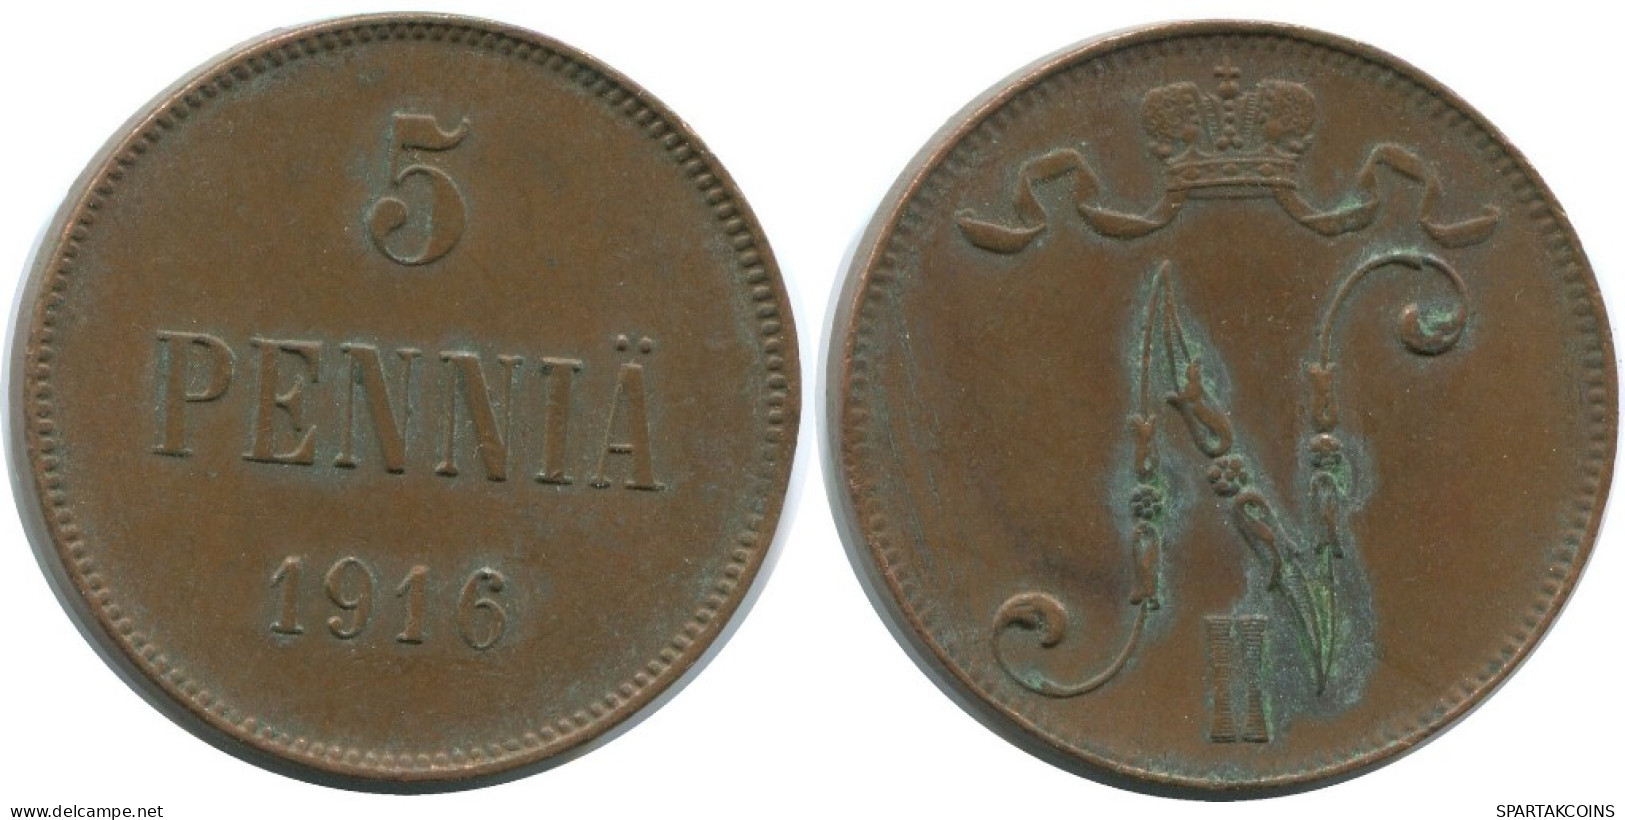 5 PENNIA 1916 FINLAND Coin RUSSIA EMPIRE #AB203.5.U.A - Finlande